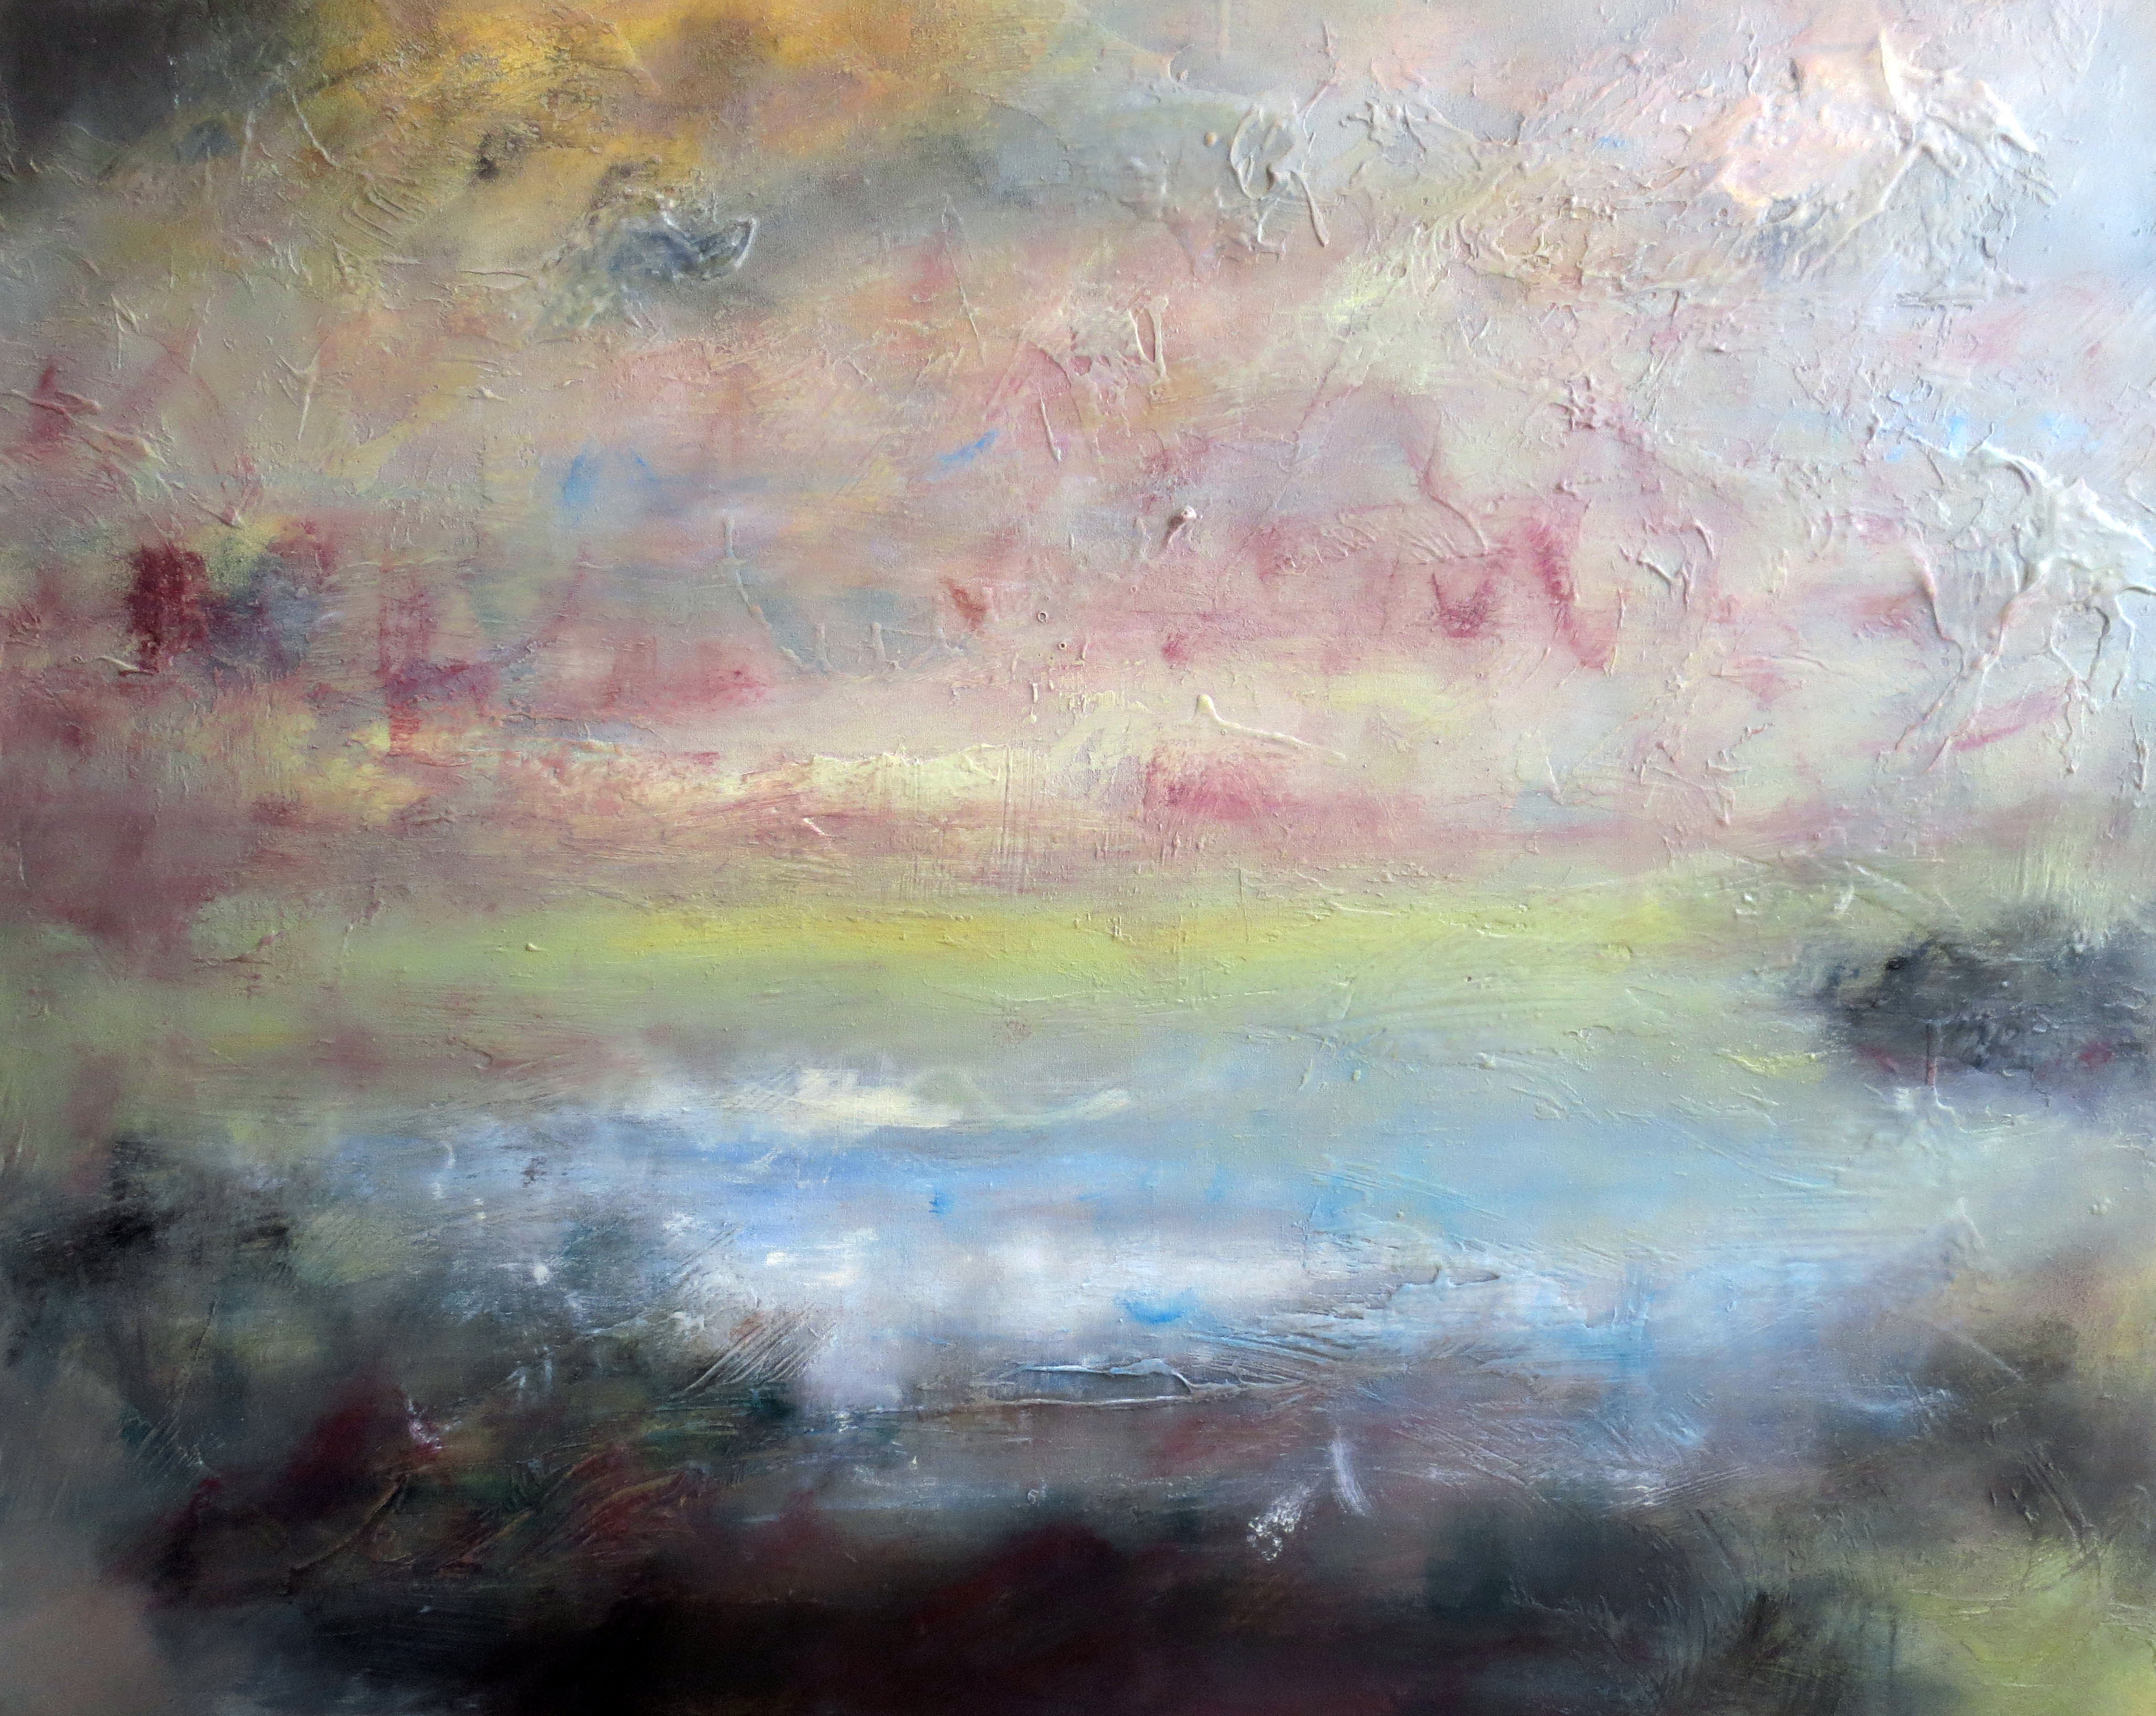 'Morning Mist', oil on canvas, 90cm x 110cm, £2800